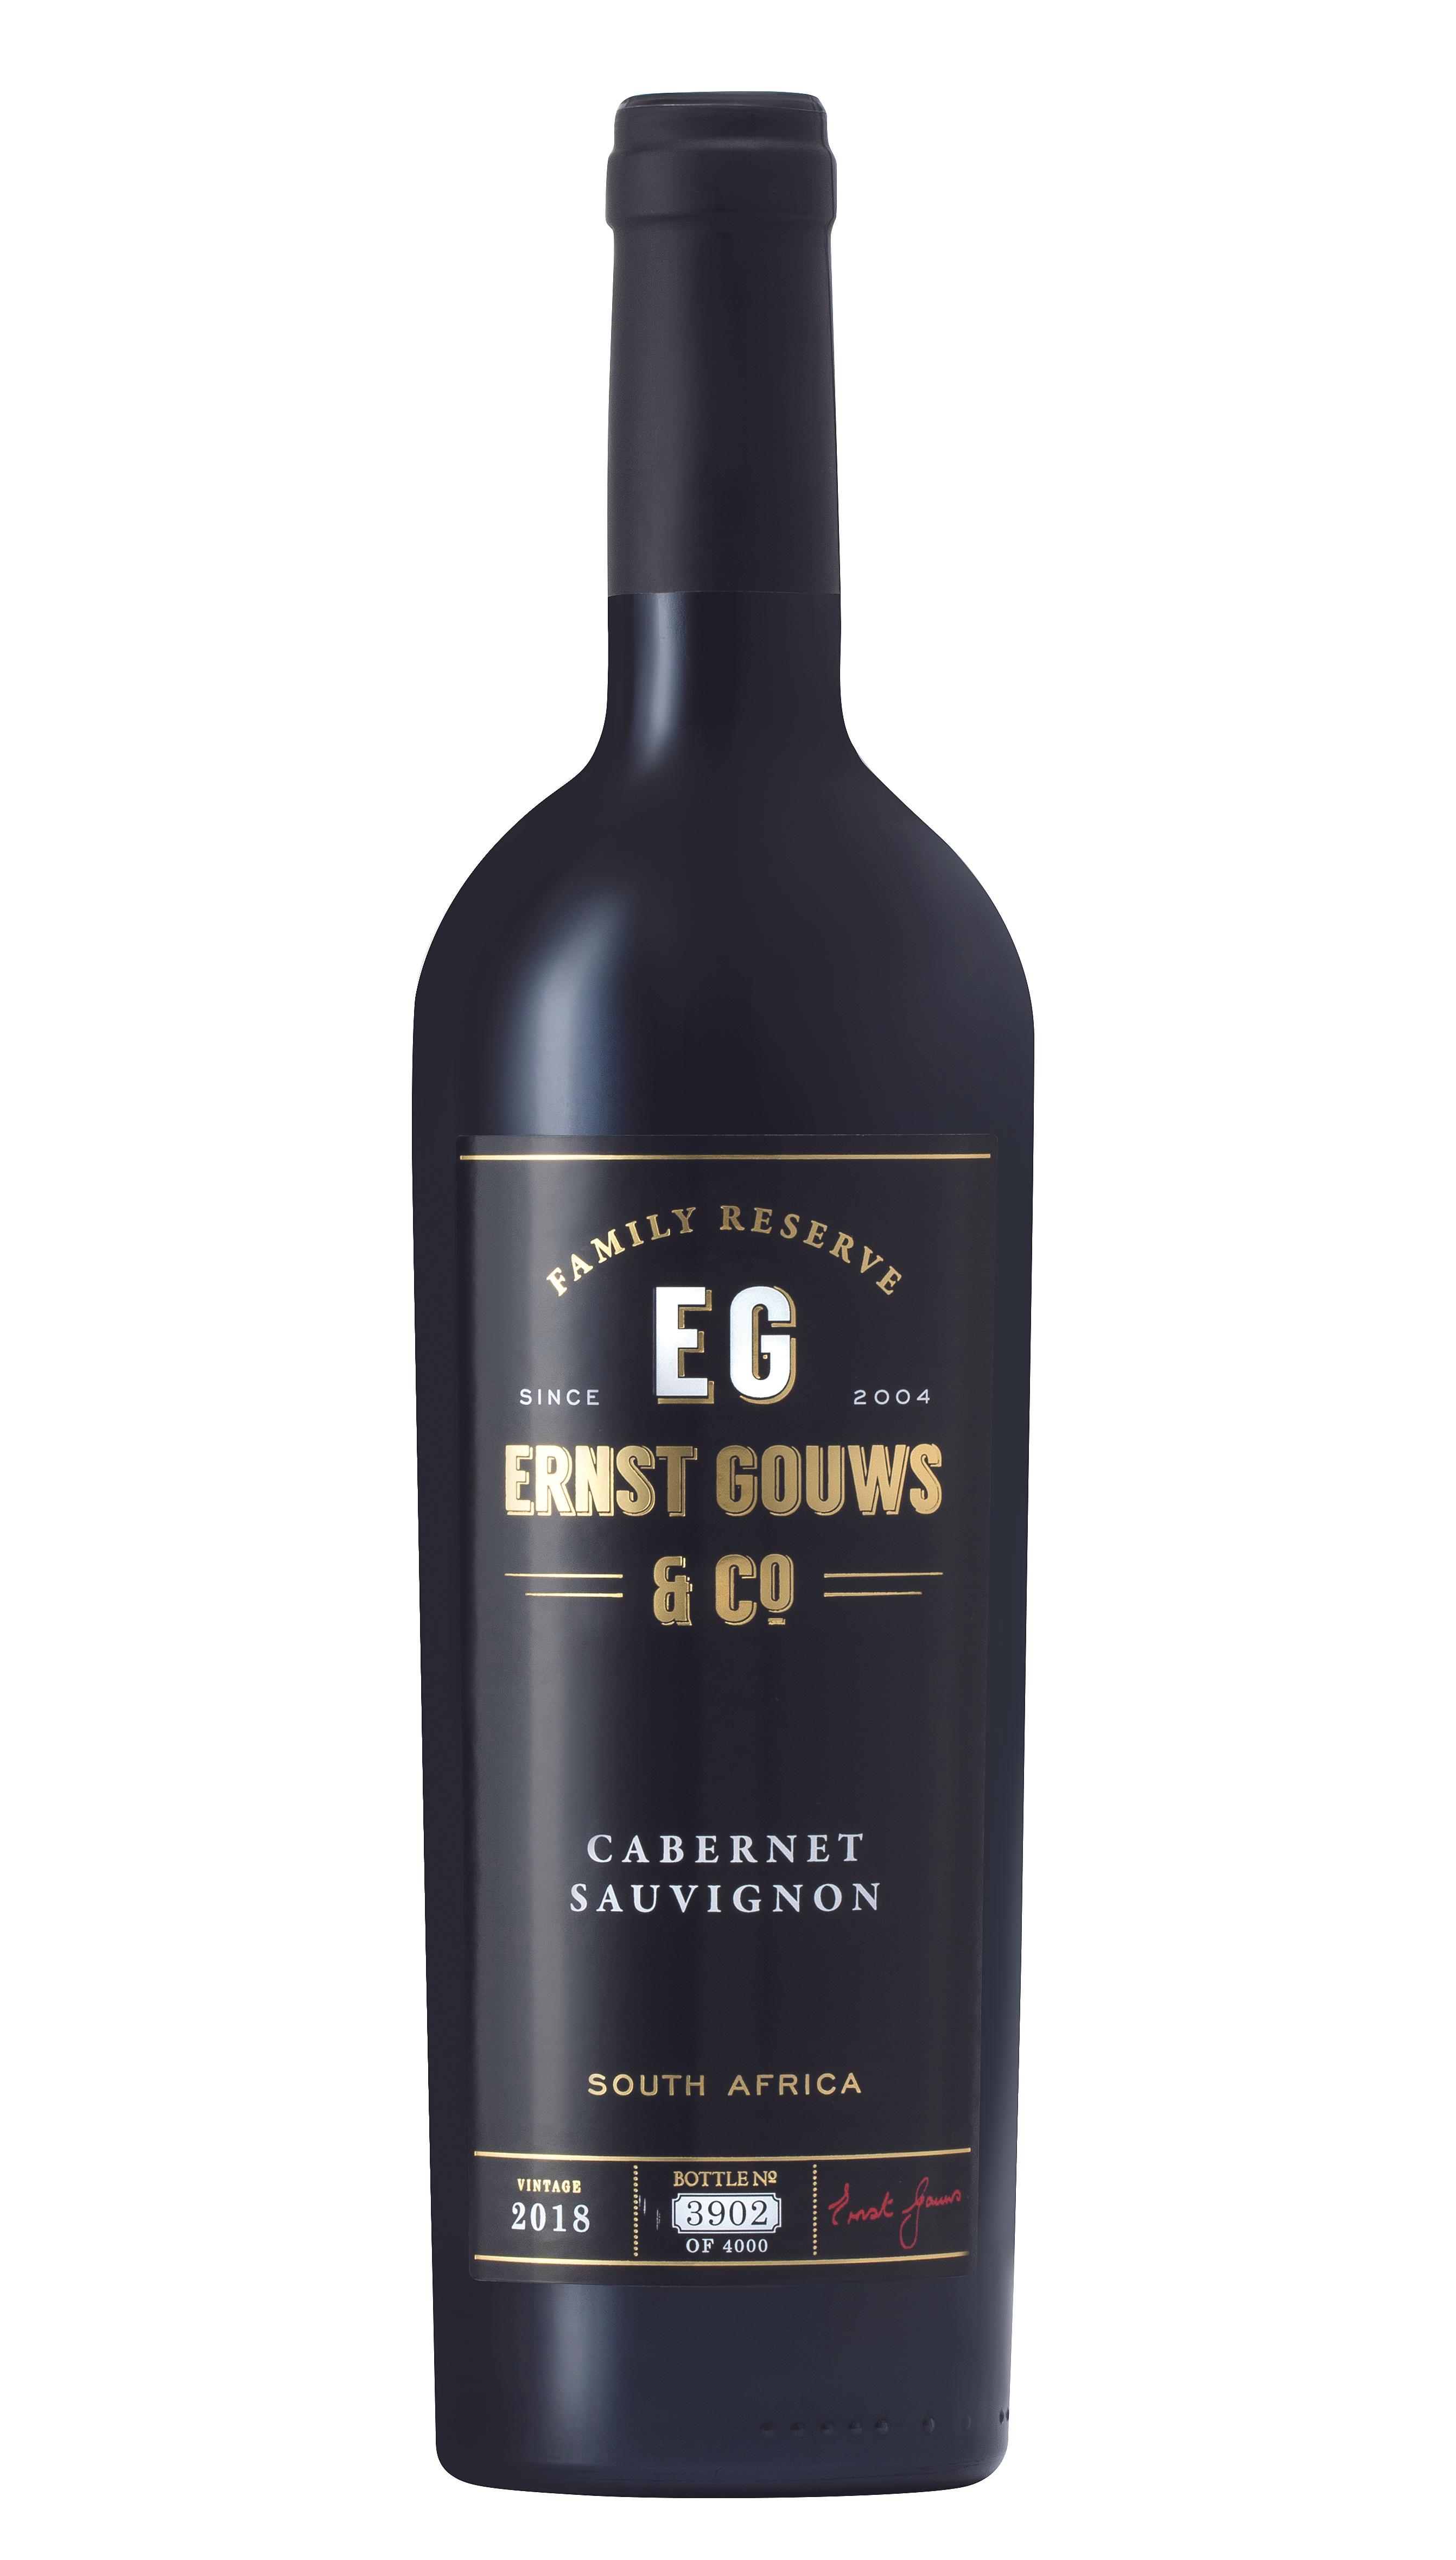 Ernst Gouws & Co Wines